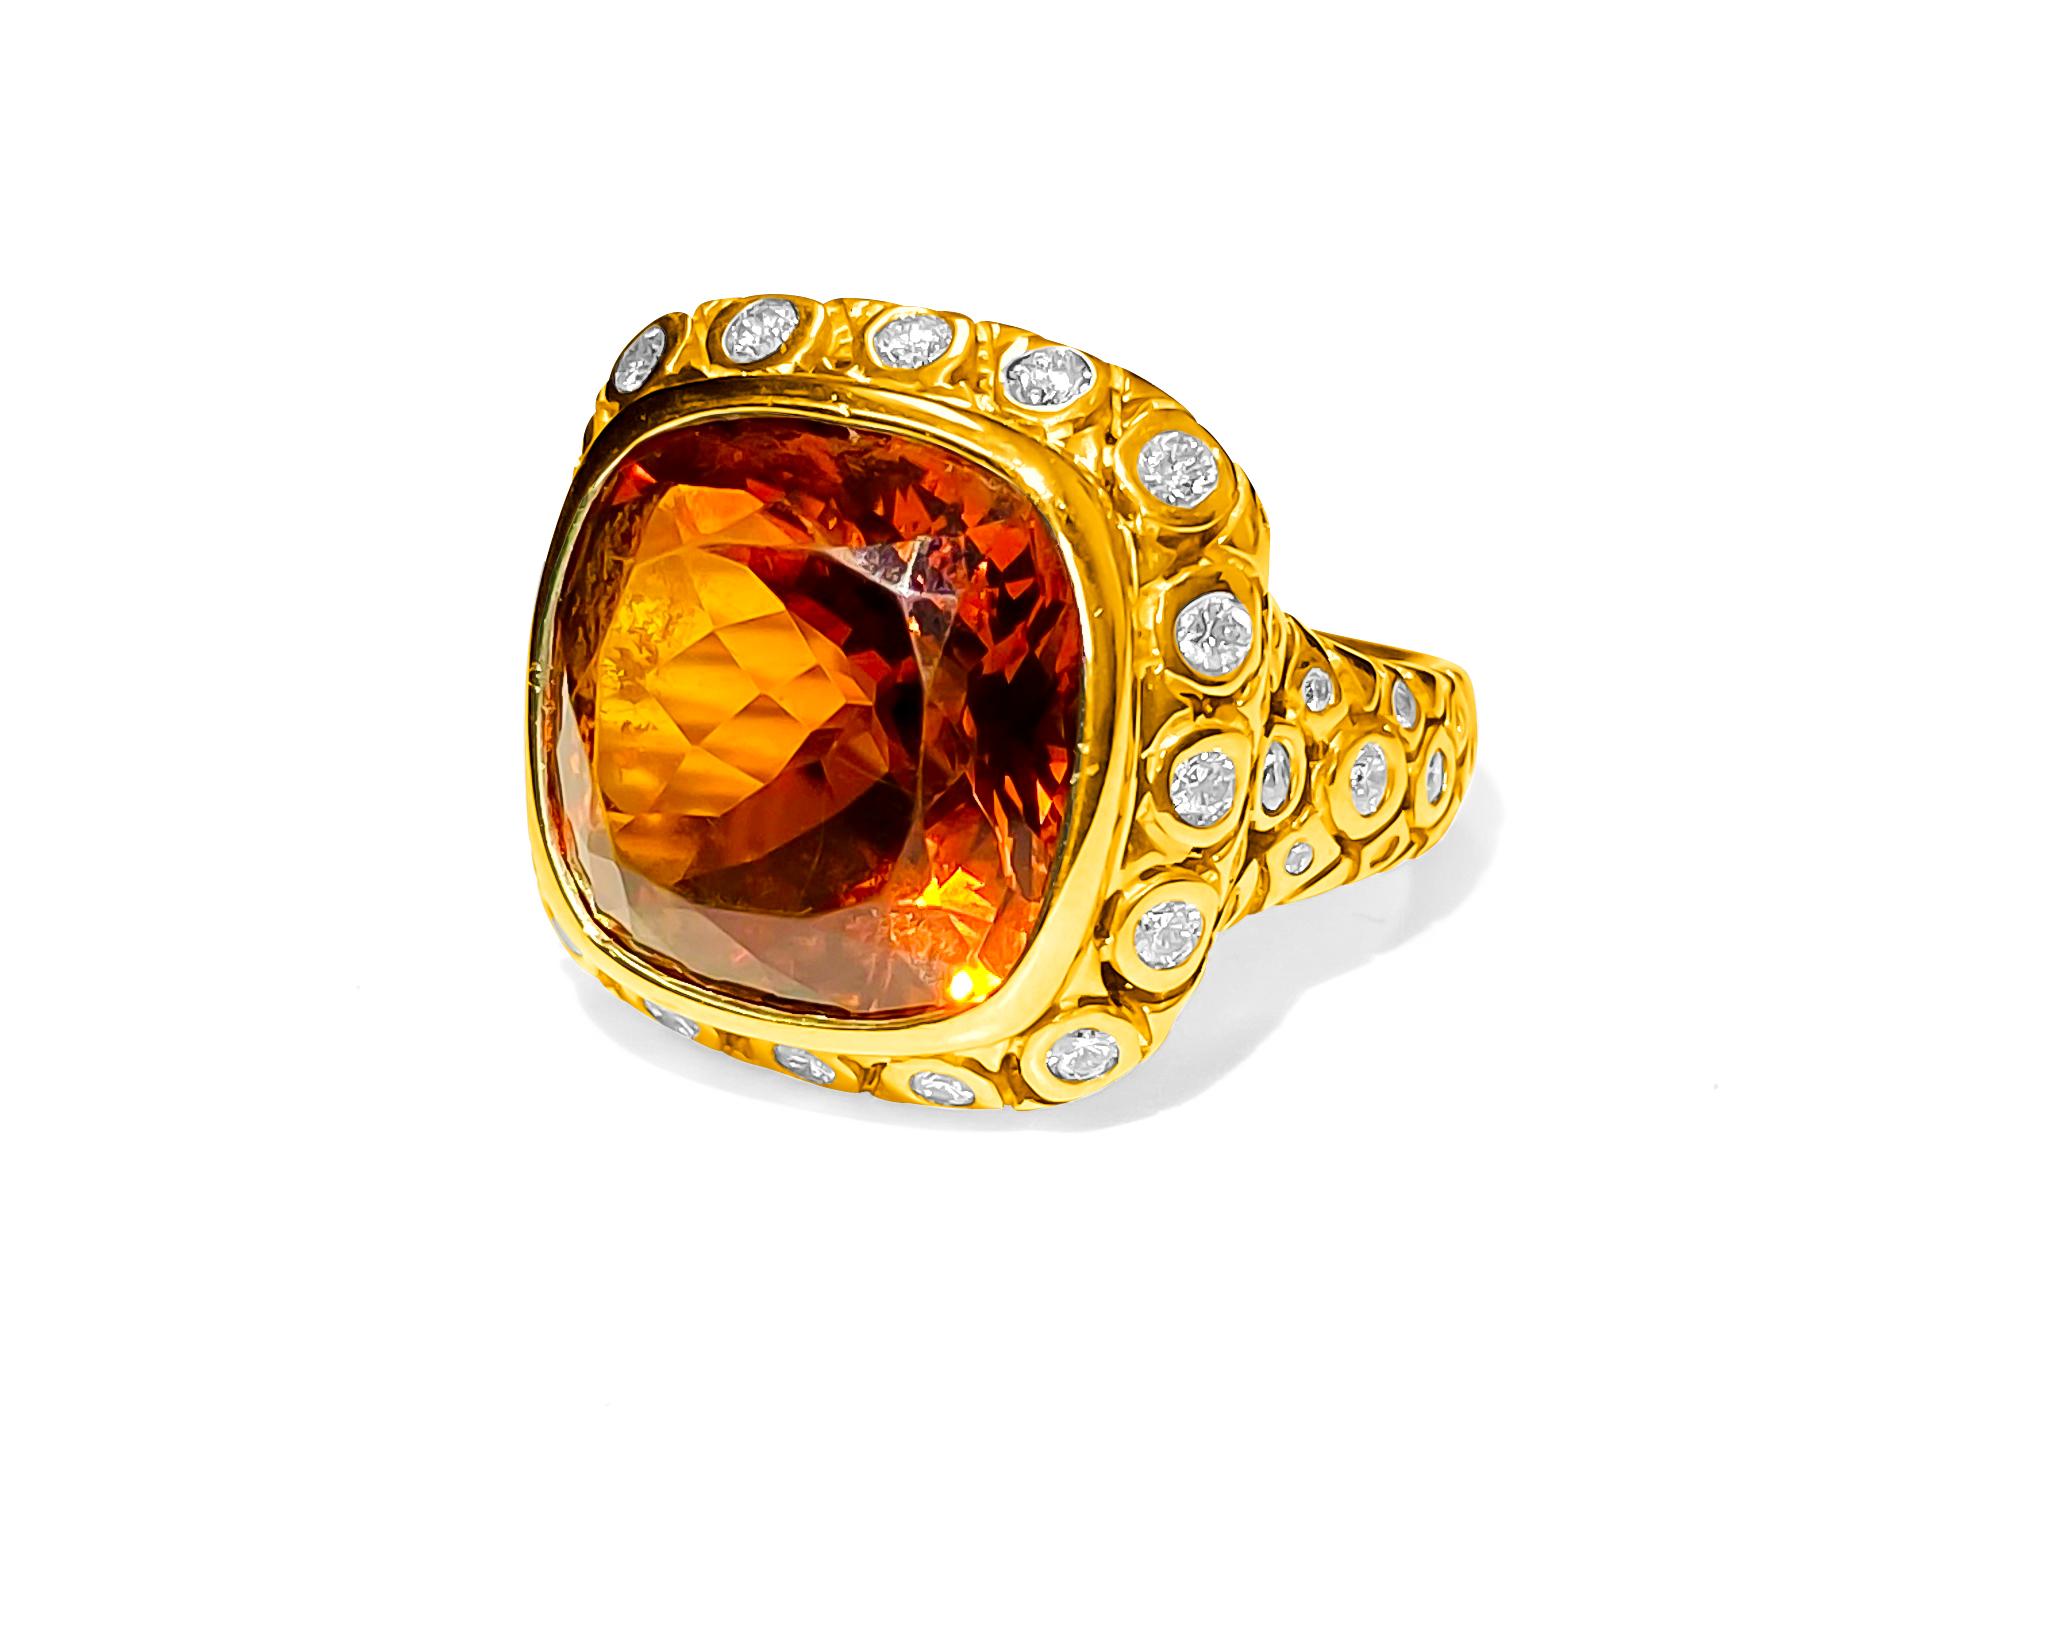 4 carat rose gold engagement ring